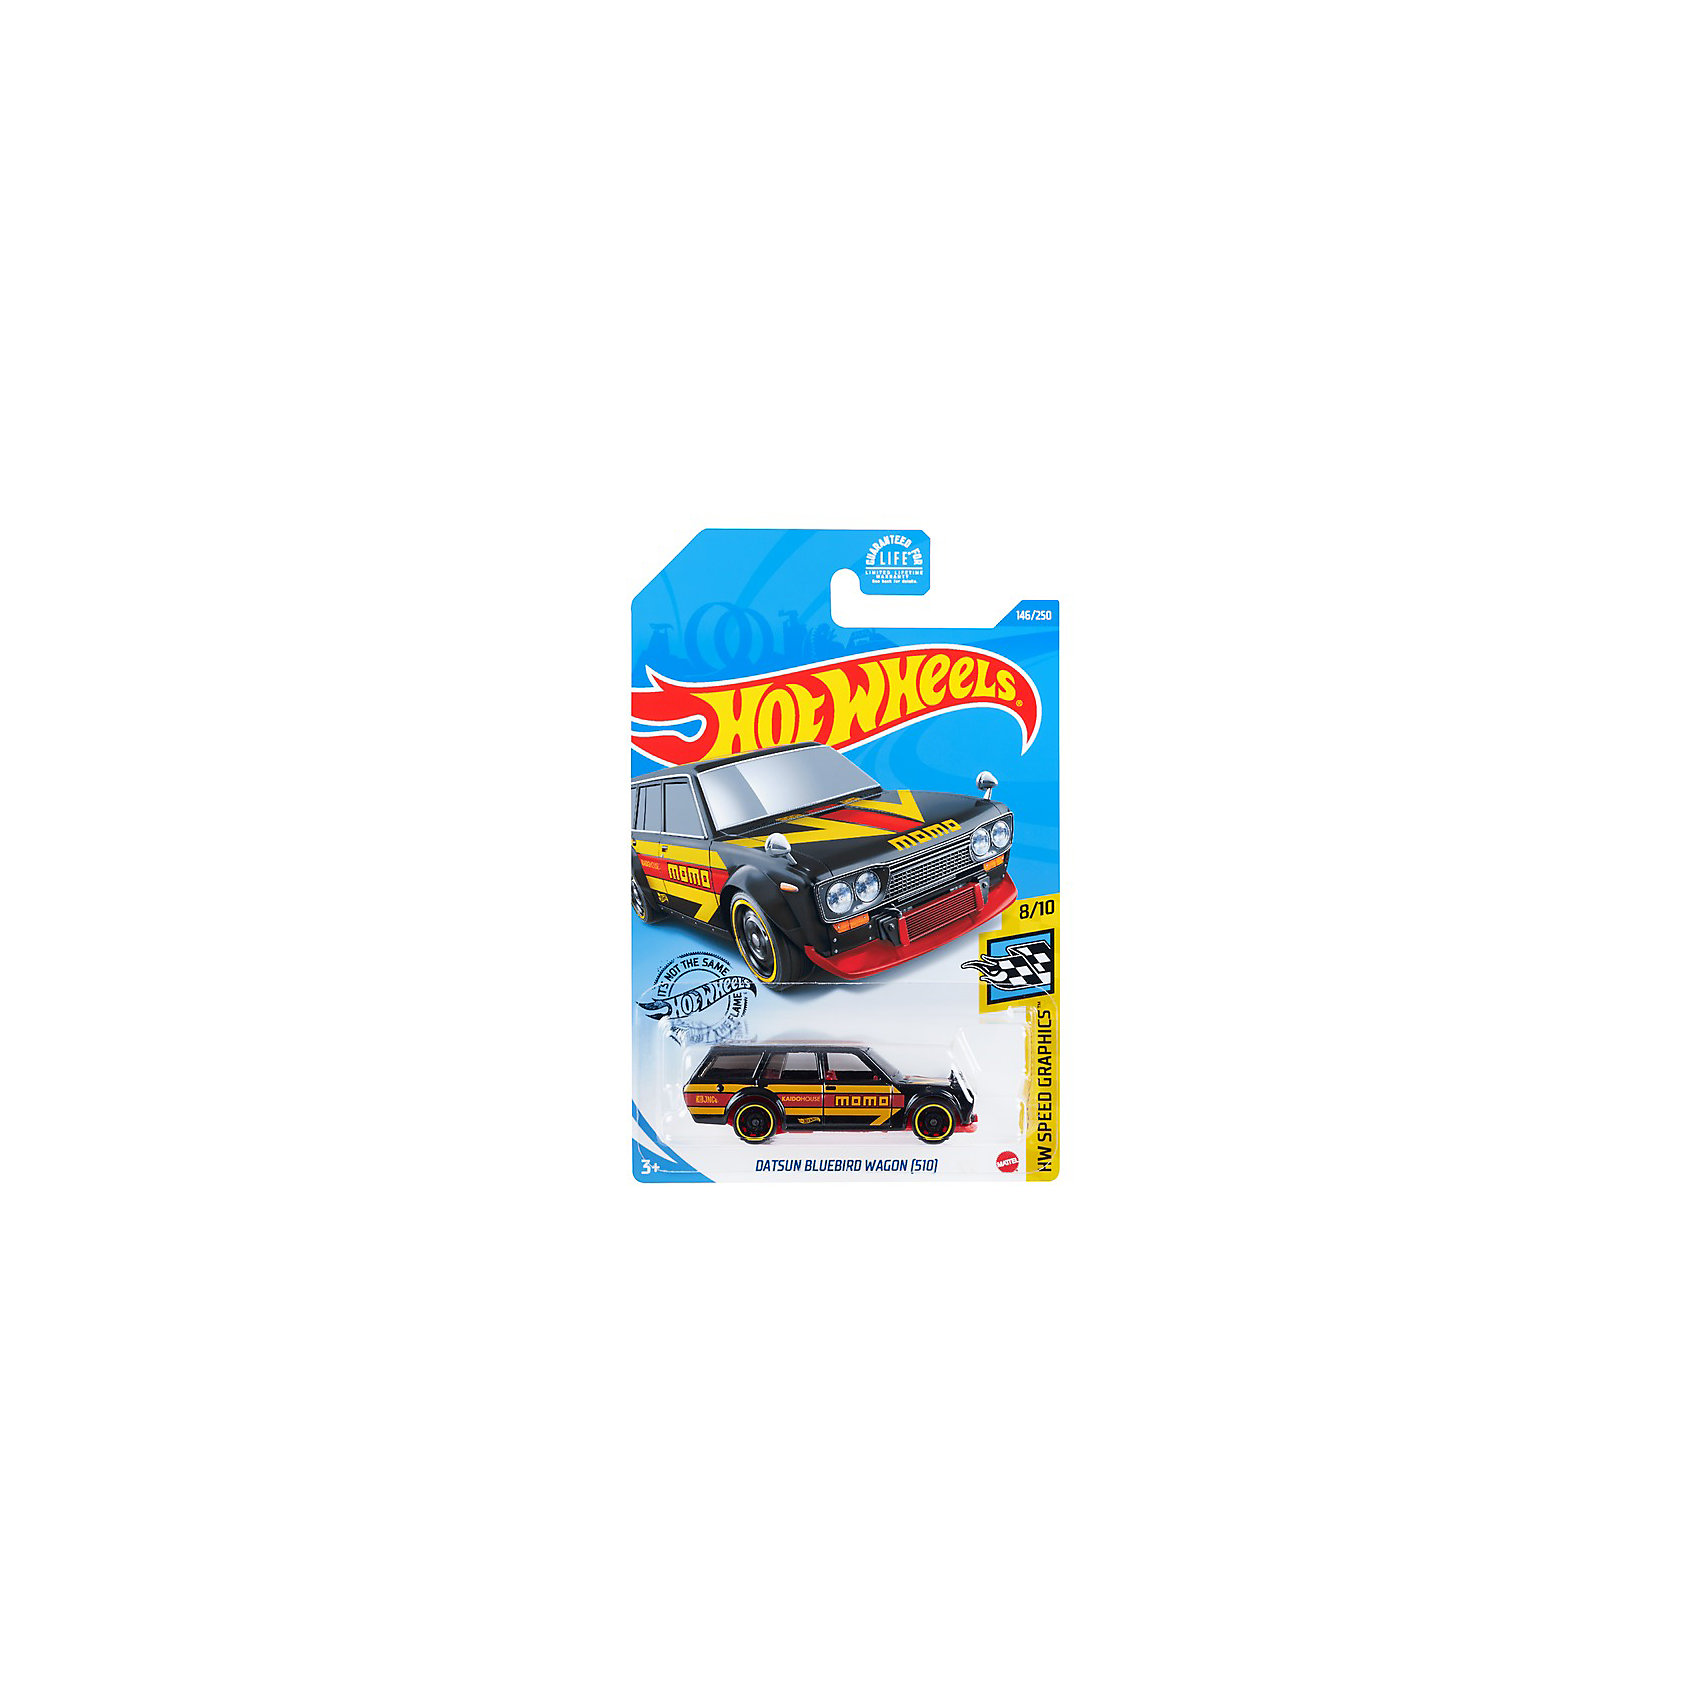 Базовая машинка Hot Wheels Datsun Bluebird Wagon (510) Mattel 16954698